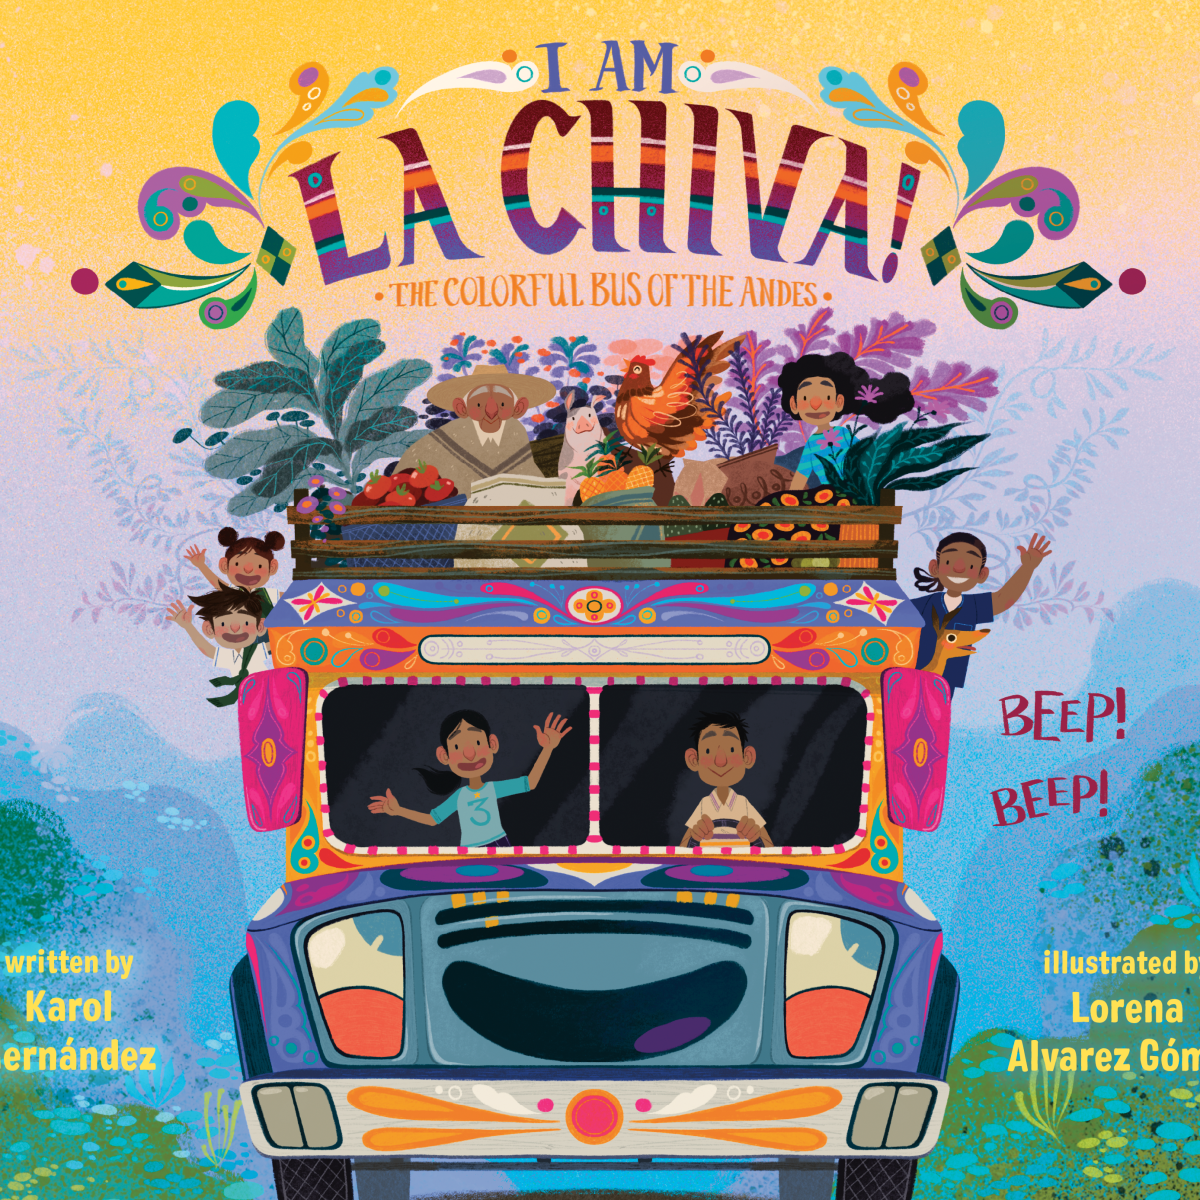 “I Am La Chiva” release date announced!